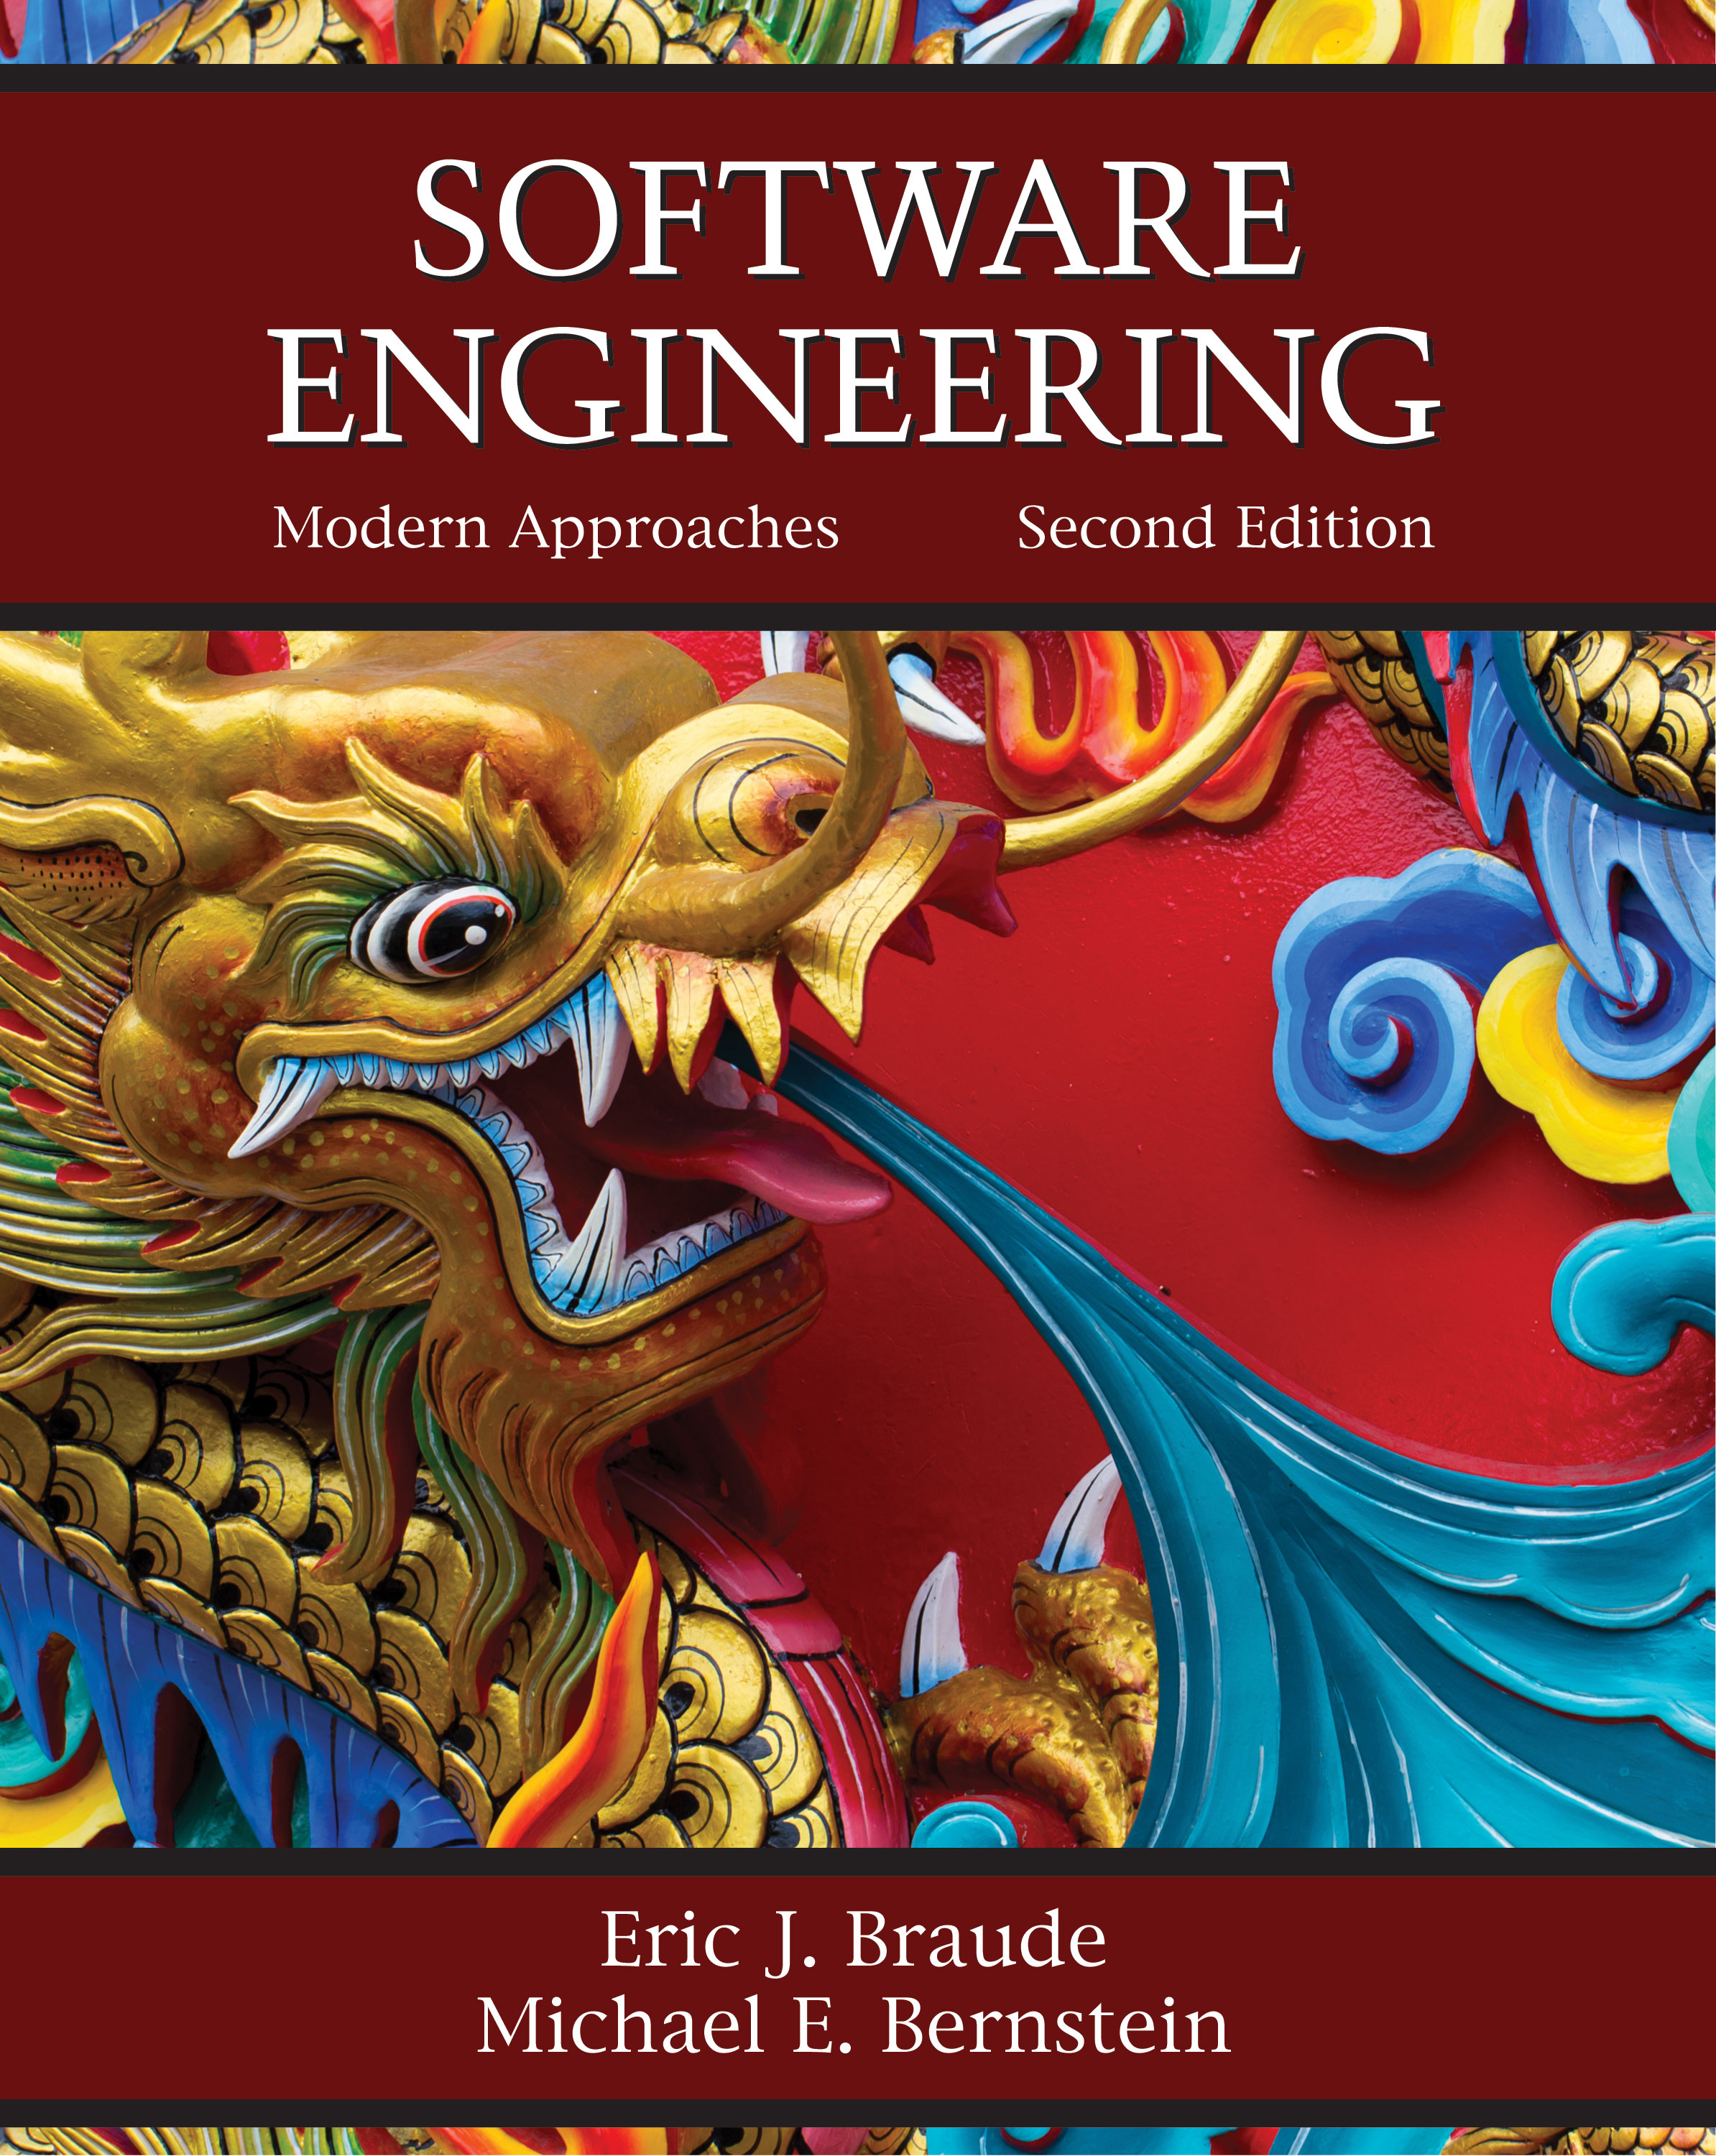 Software Engineering: Modern Approaches by Eric J. Braude, Michael E. Bernstein